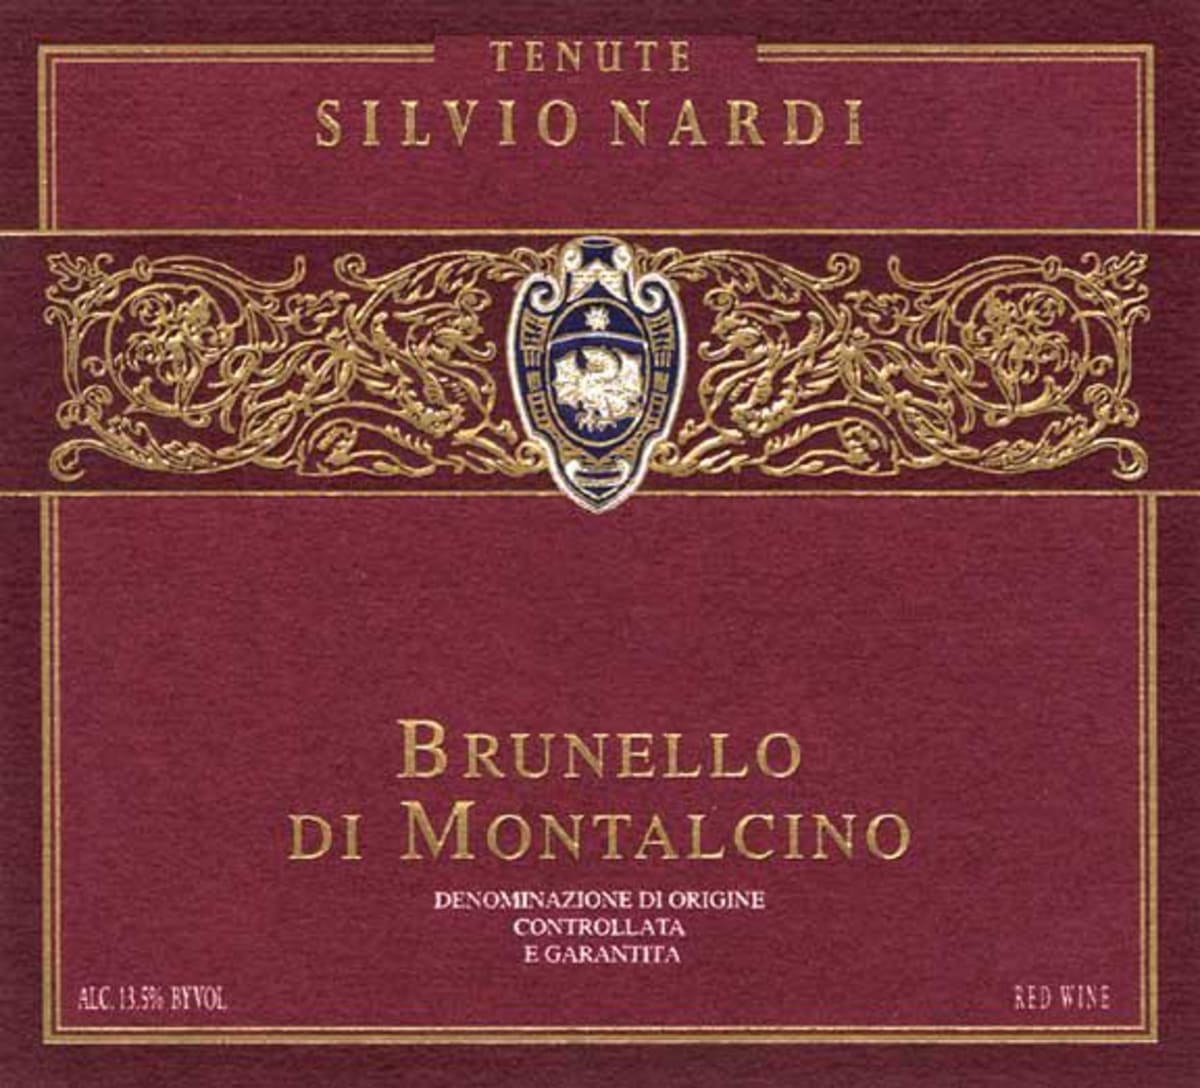 Tenute Silvio Nardi Brunello di Montalcino 2006 Front Label